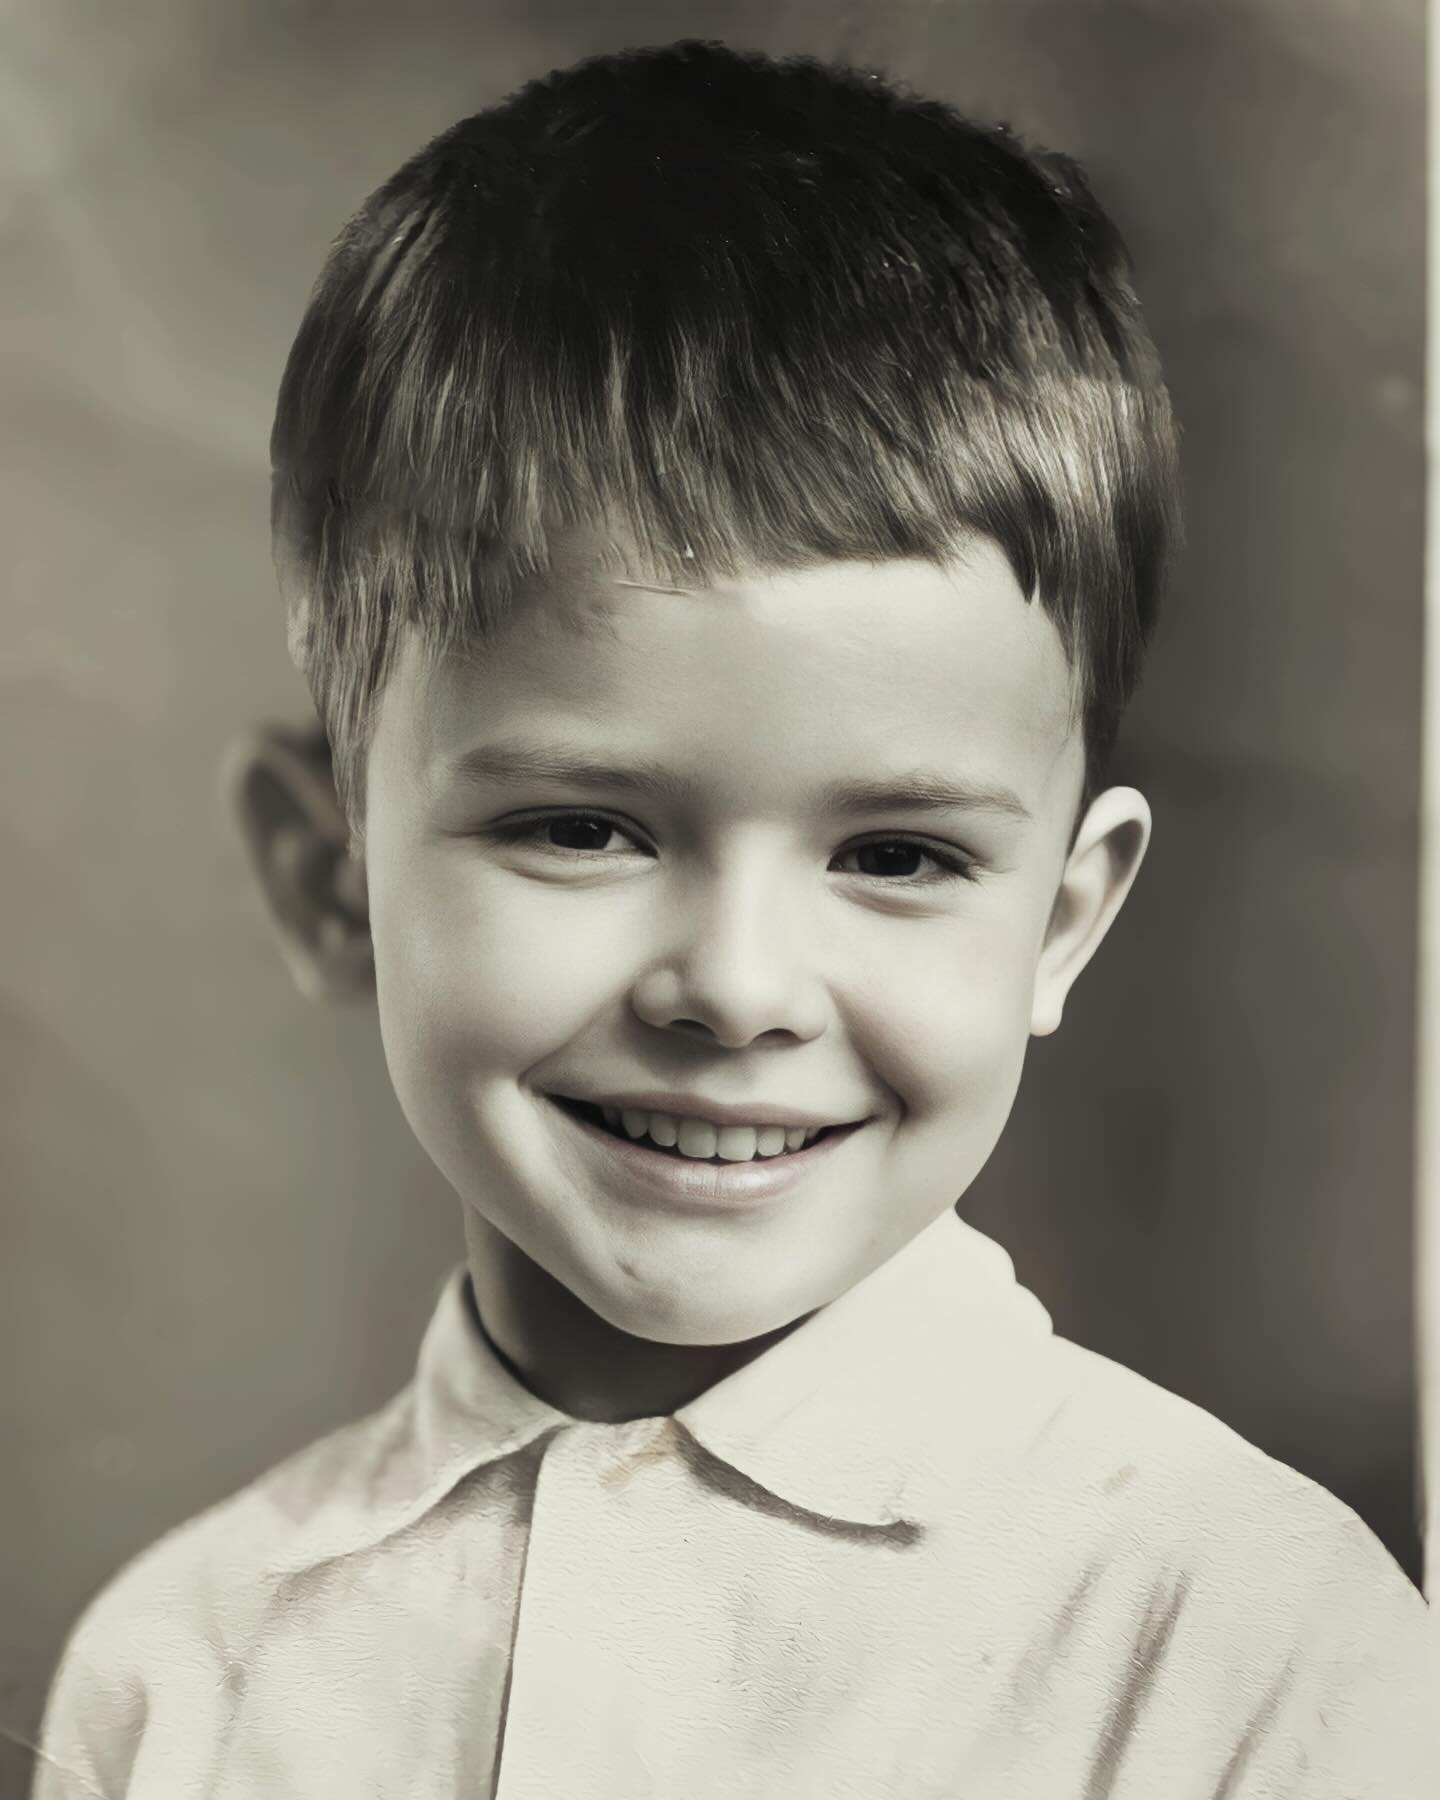 Андрей Данилко поделился редким фото из детства: “Какой красивый мальчик“